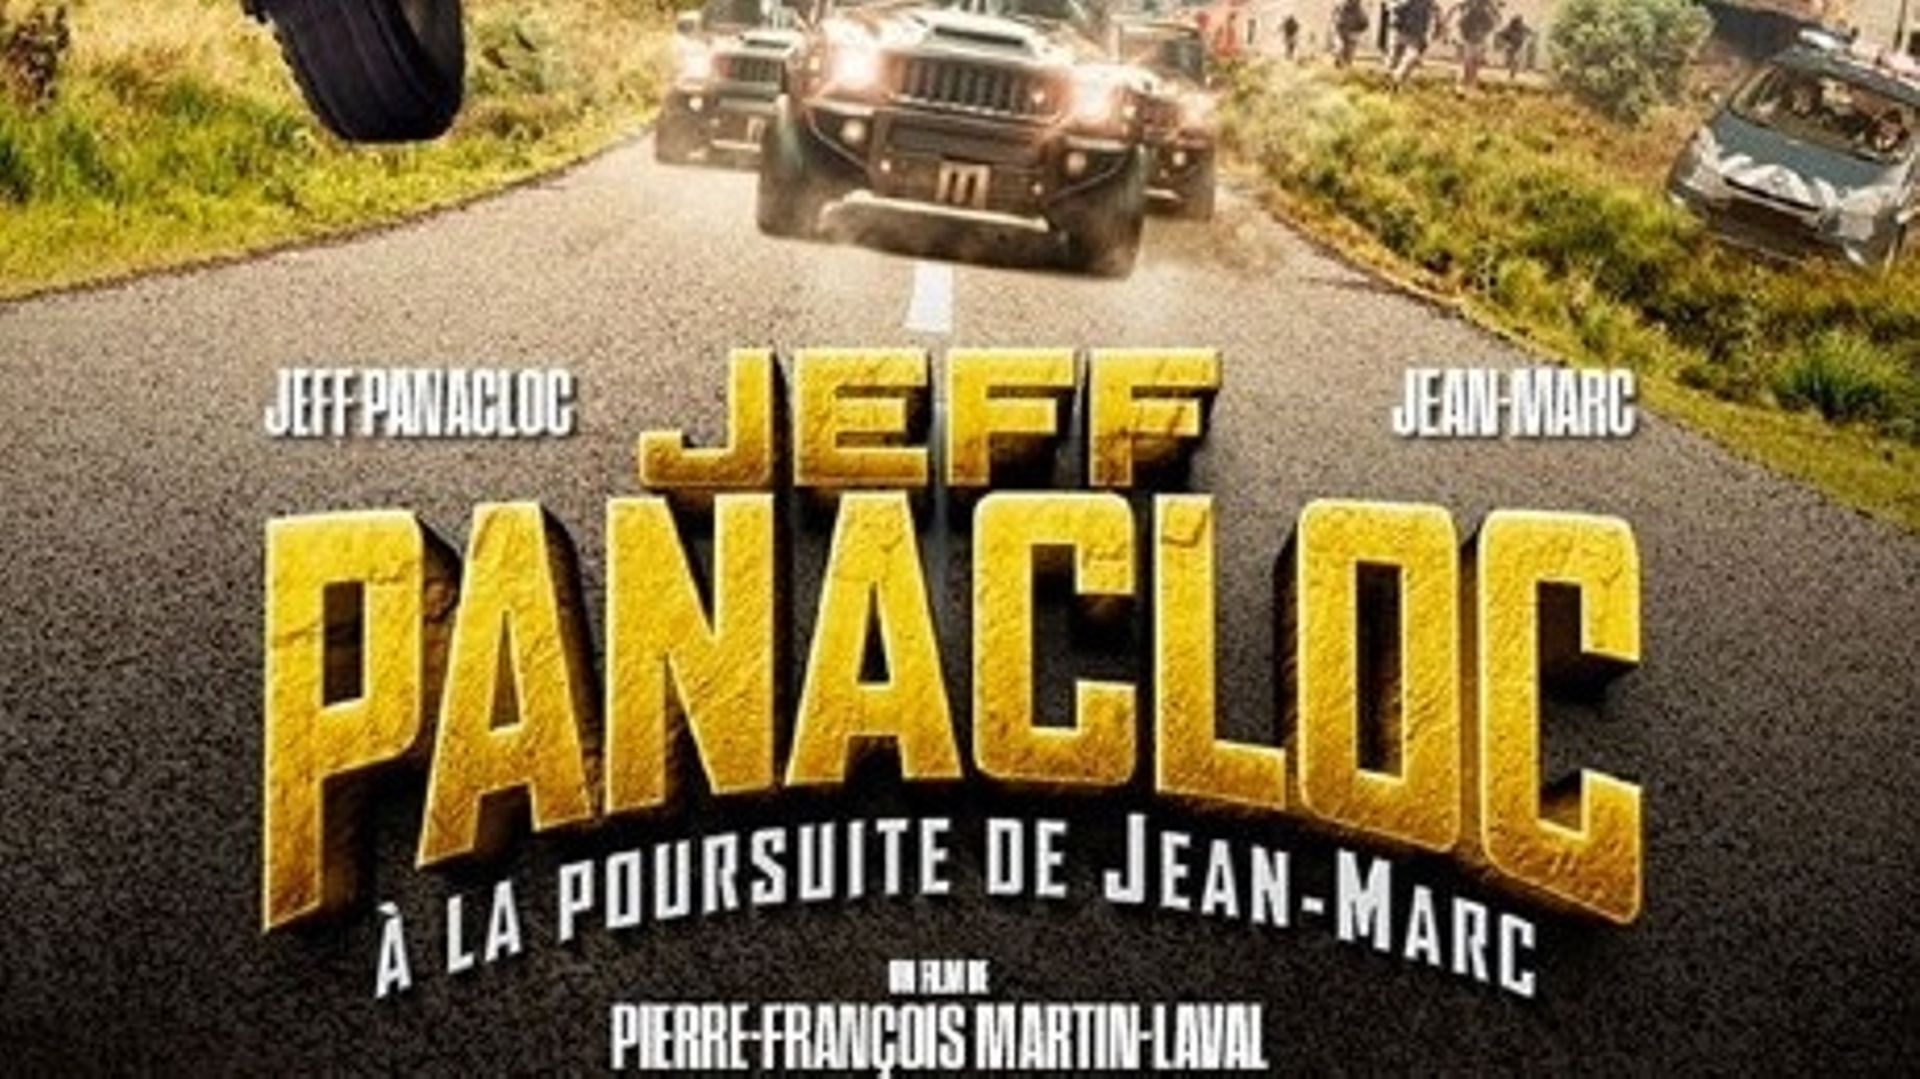 Jeff Panacloc : À la poursuite de Jean-Marc », une réjouissante comédie  d'aventure pour toute la famille 